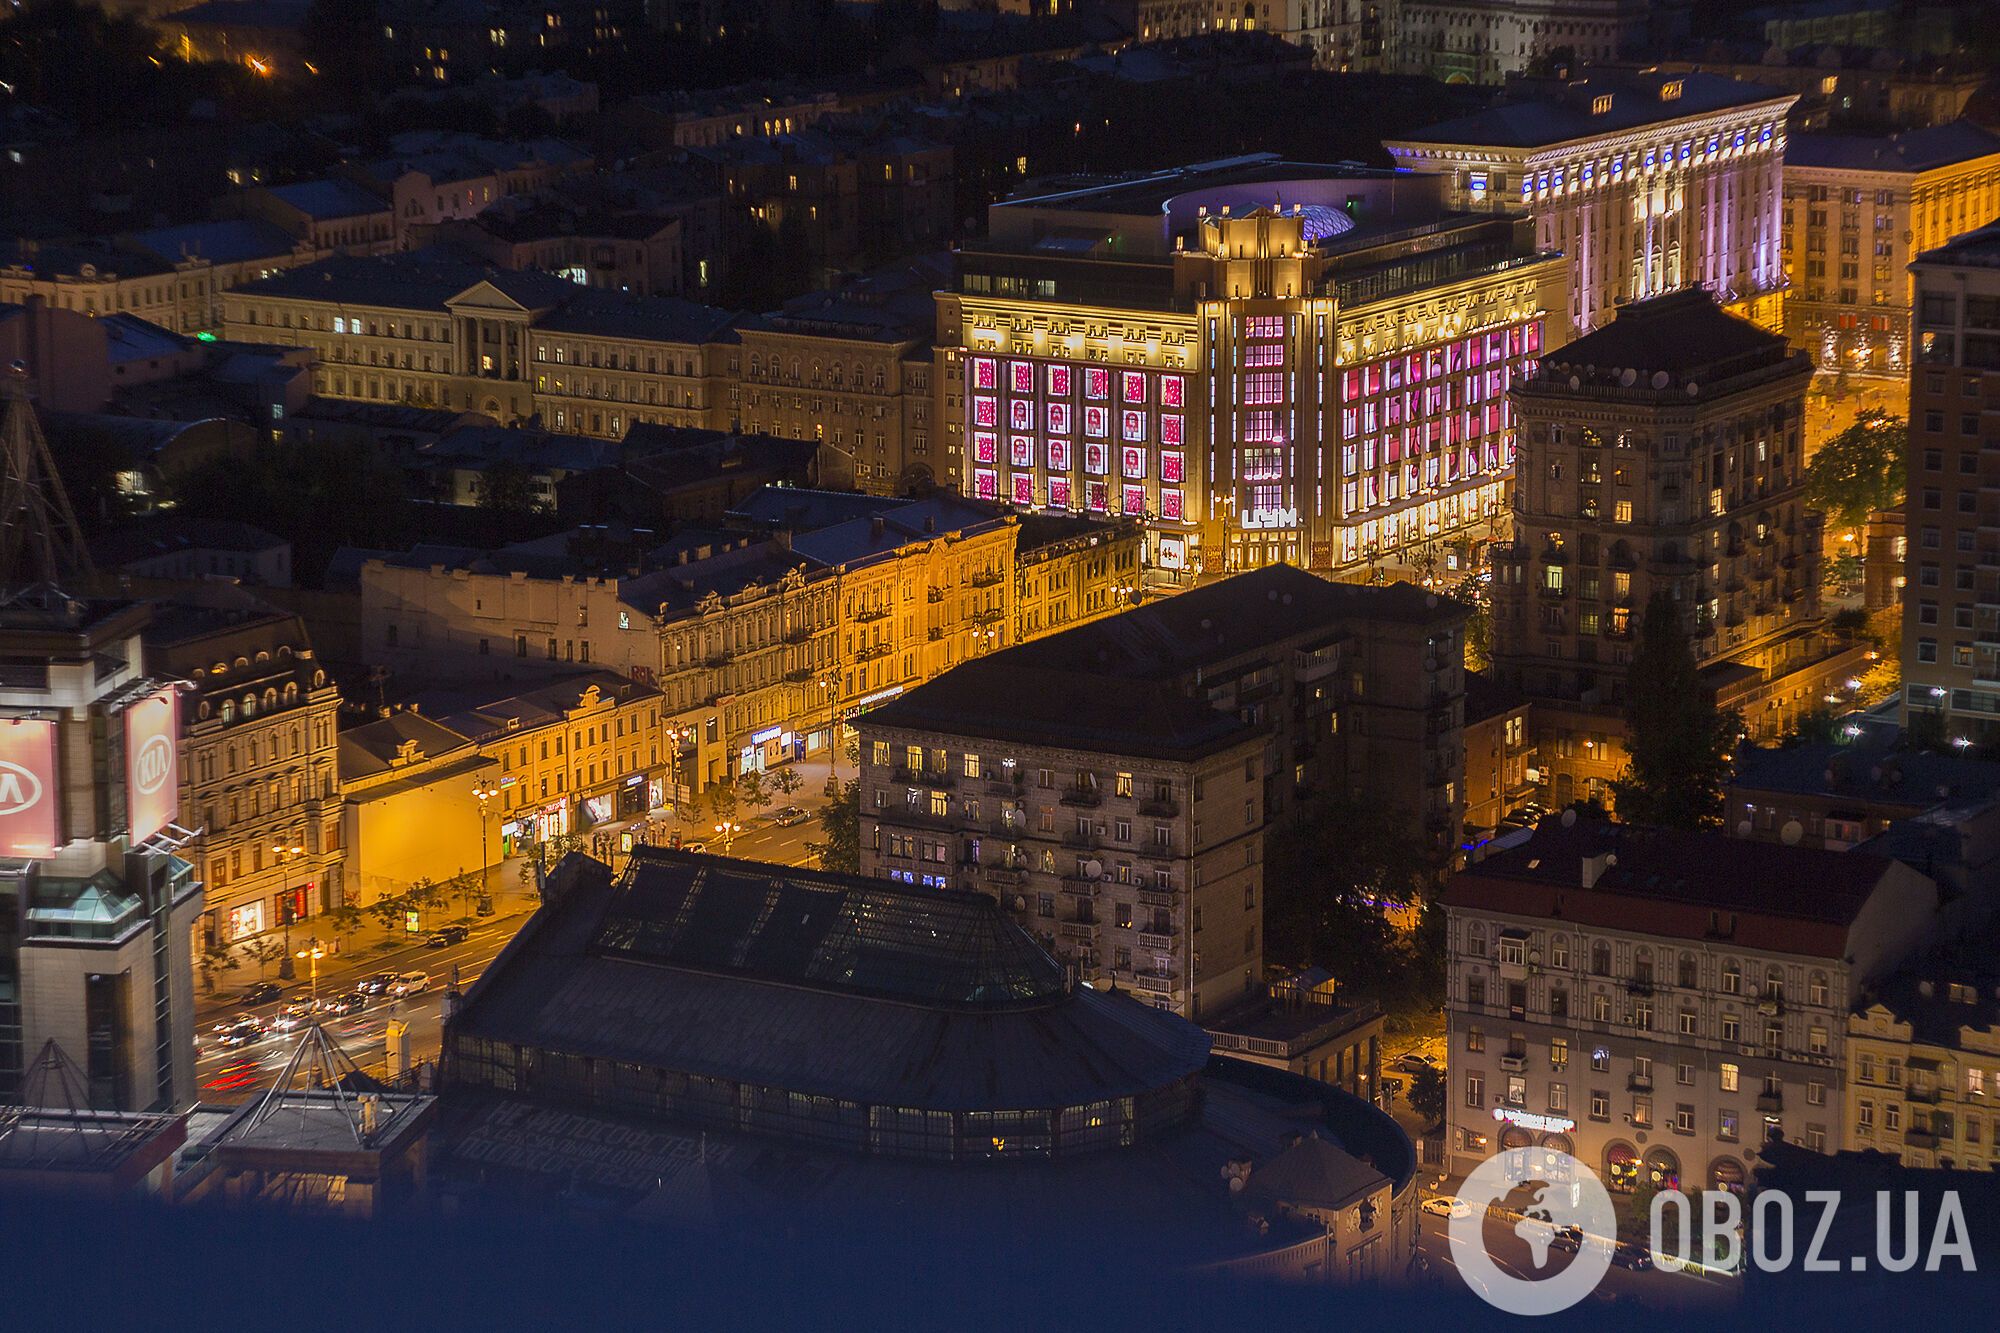 Огни Киева: удивительные фото столицы с высоты